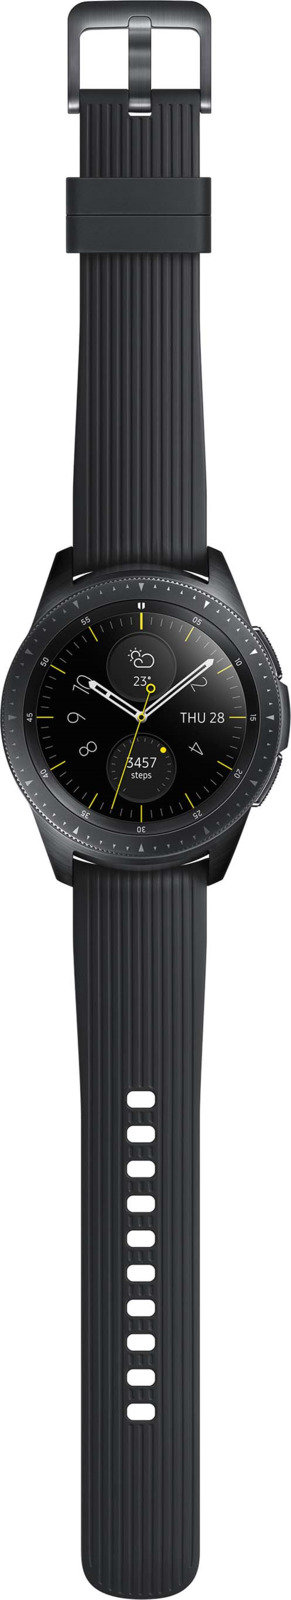 фото Умные часы Samsung Galaxy Watch, 42 мм, черный